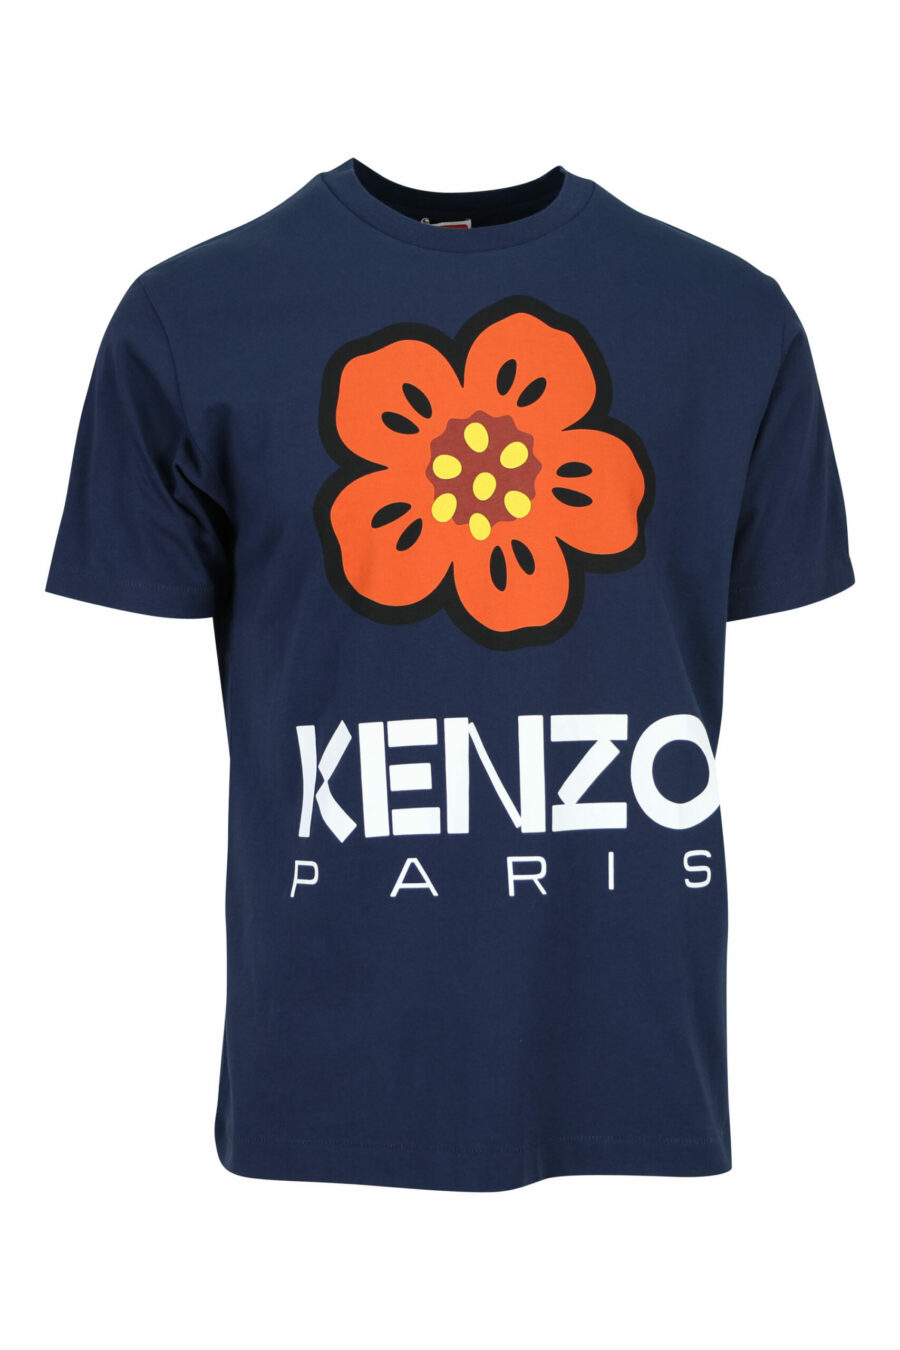 T-shirt azul com o logótipo "flor" - 3612230465732